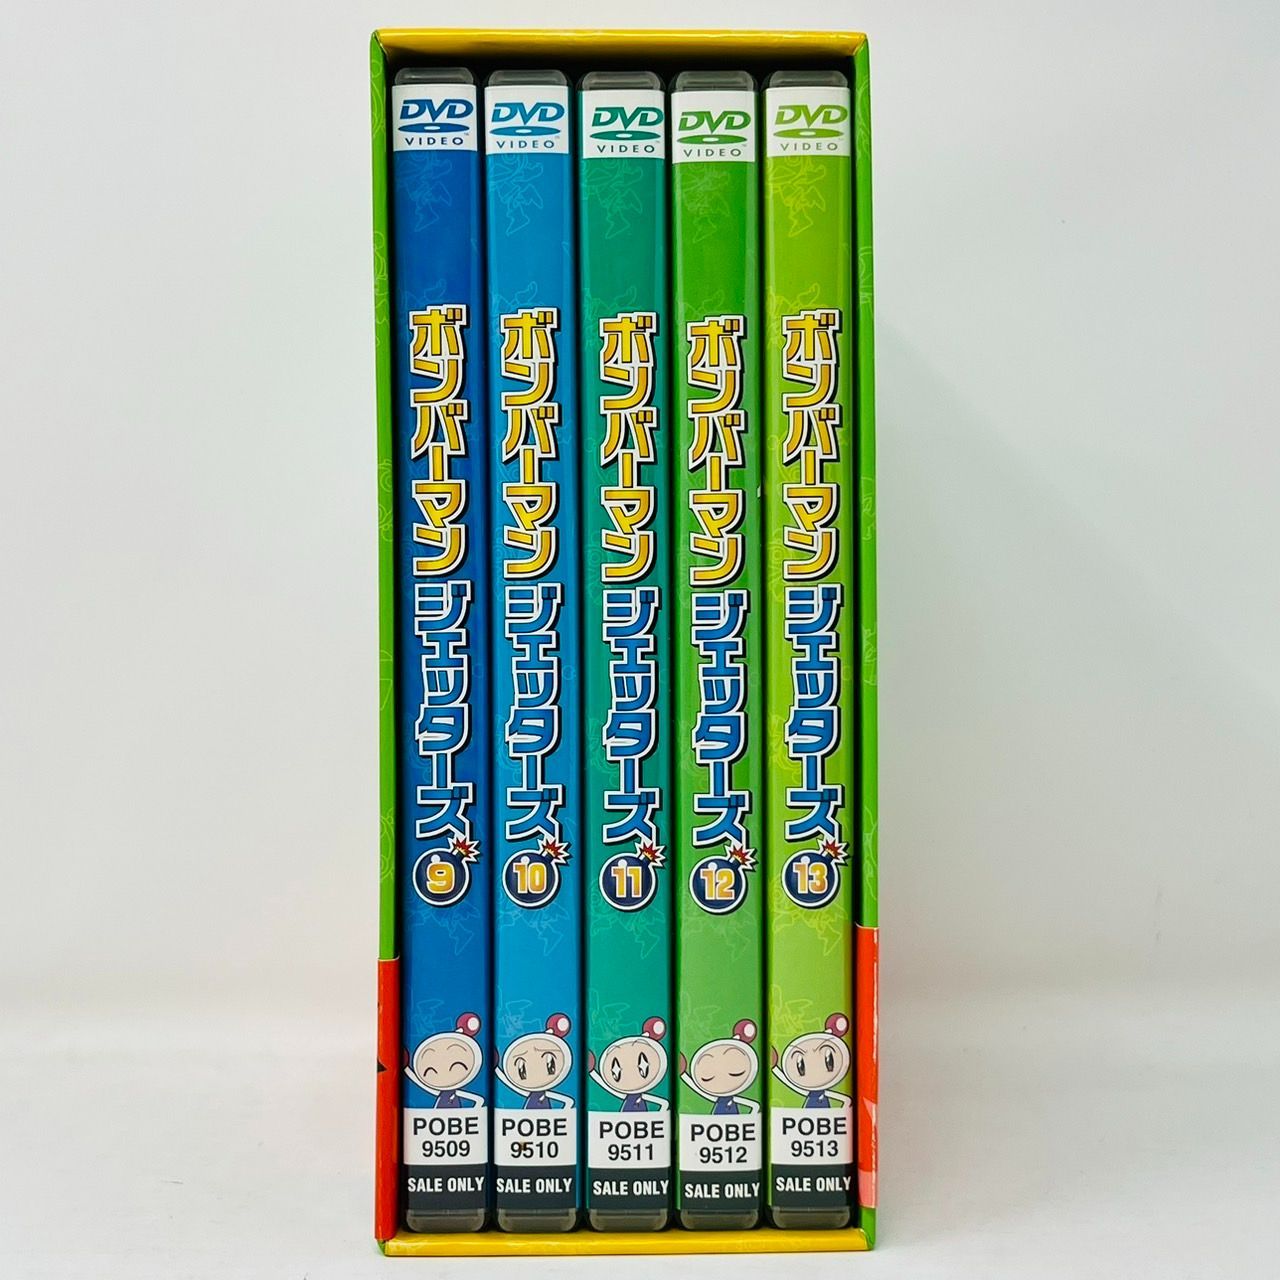 ボンバーマンジェッターズ DVD-BOX 1~3 セット / ファイヤーBOX バーニングファイヤーBOX バビブべBOX - メルカリ